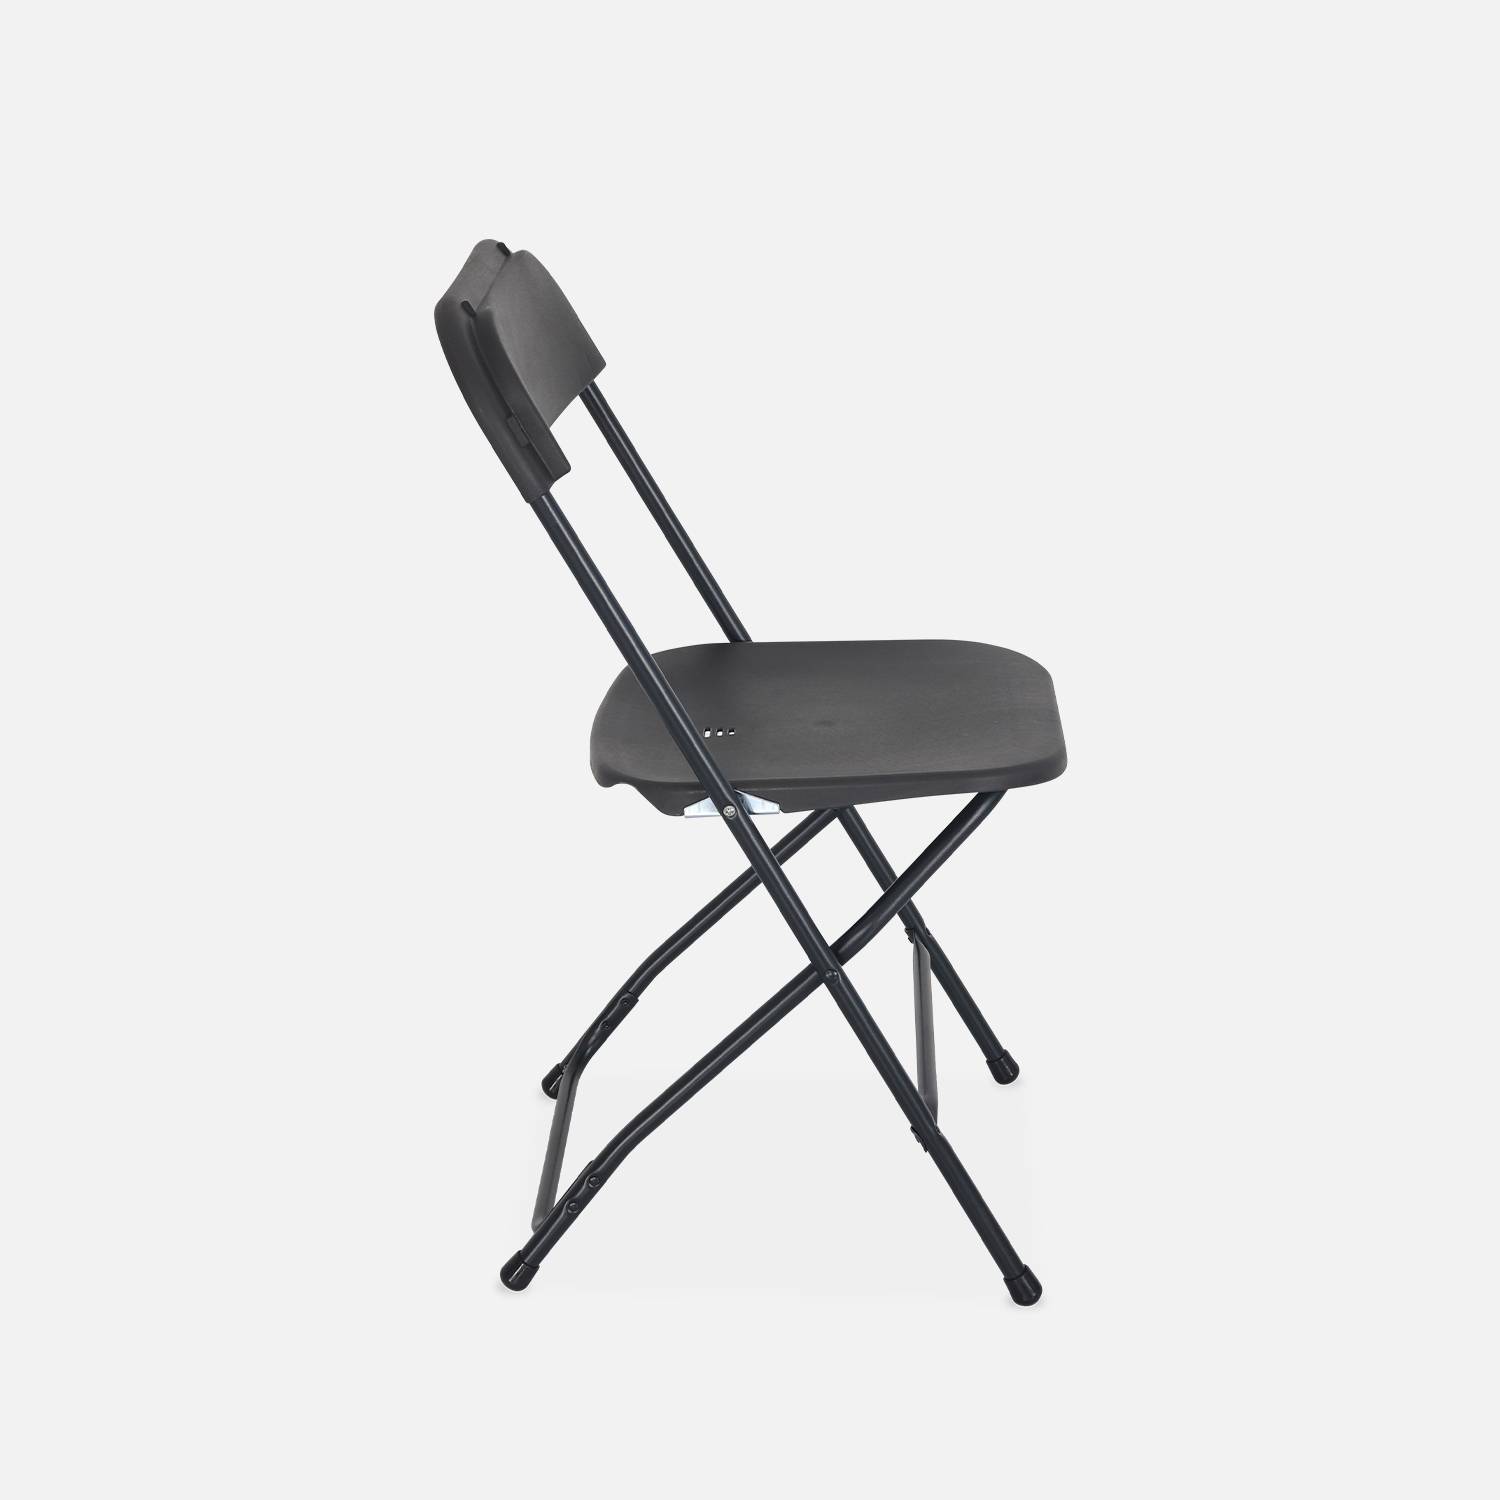  Chaises de réception pliantes – Fiesta – 6 chaises d'appoint en plastique gris foncé et métal Photo3